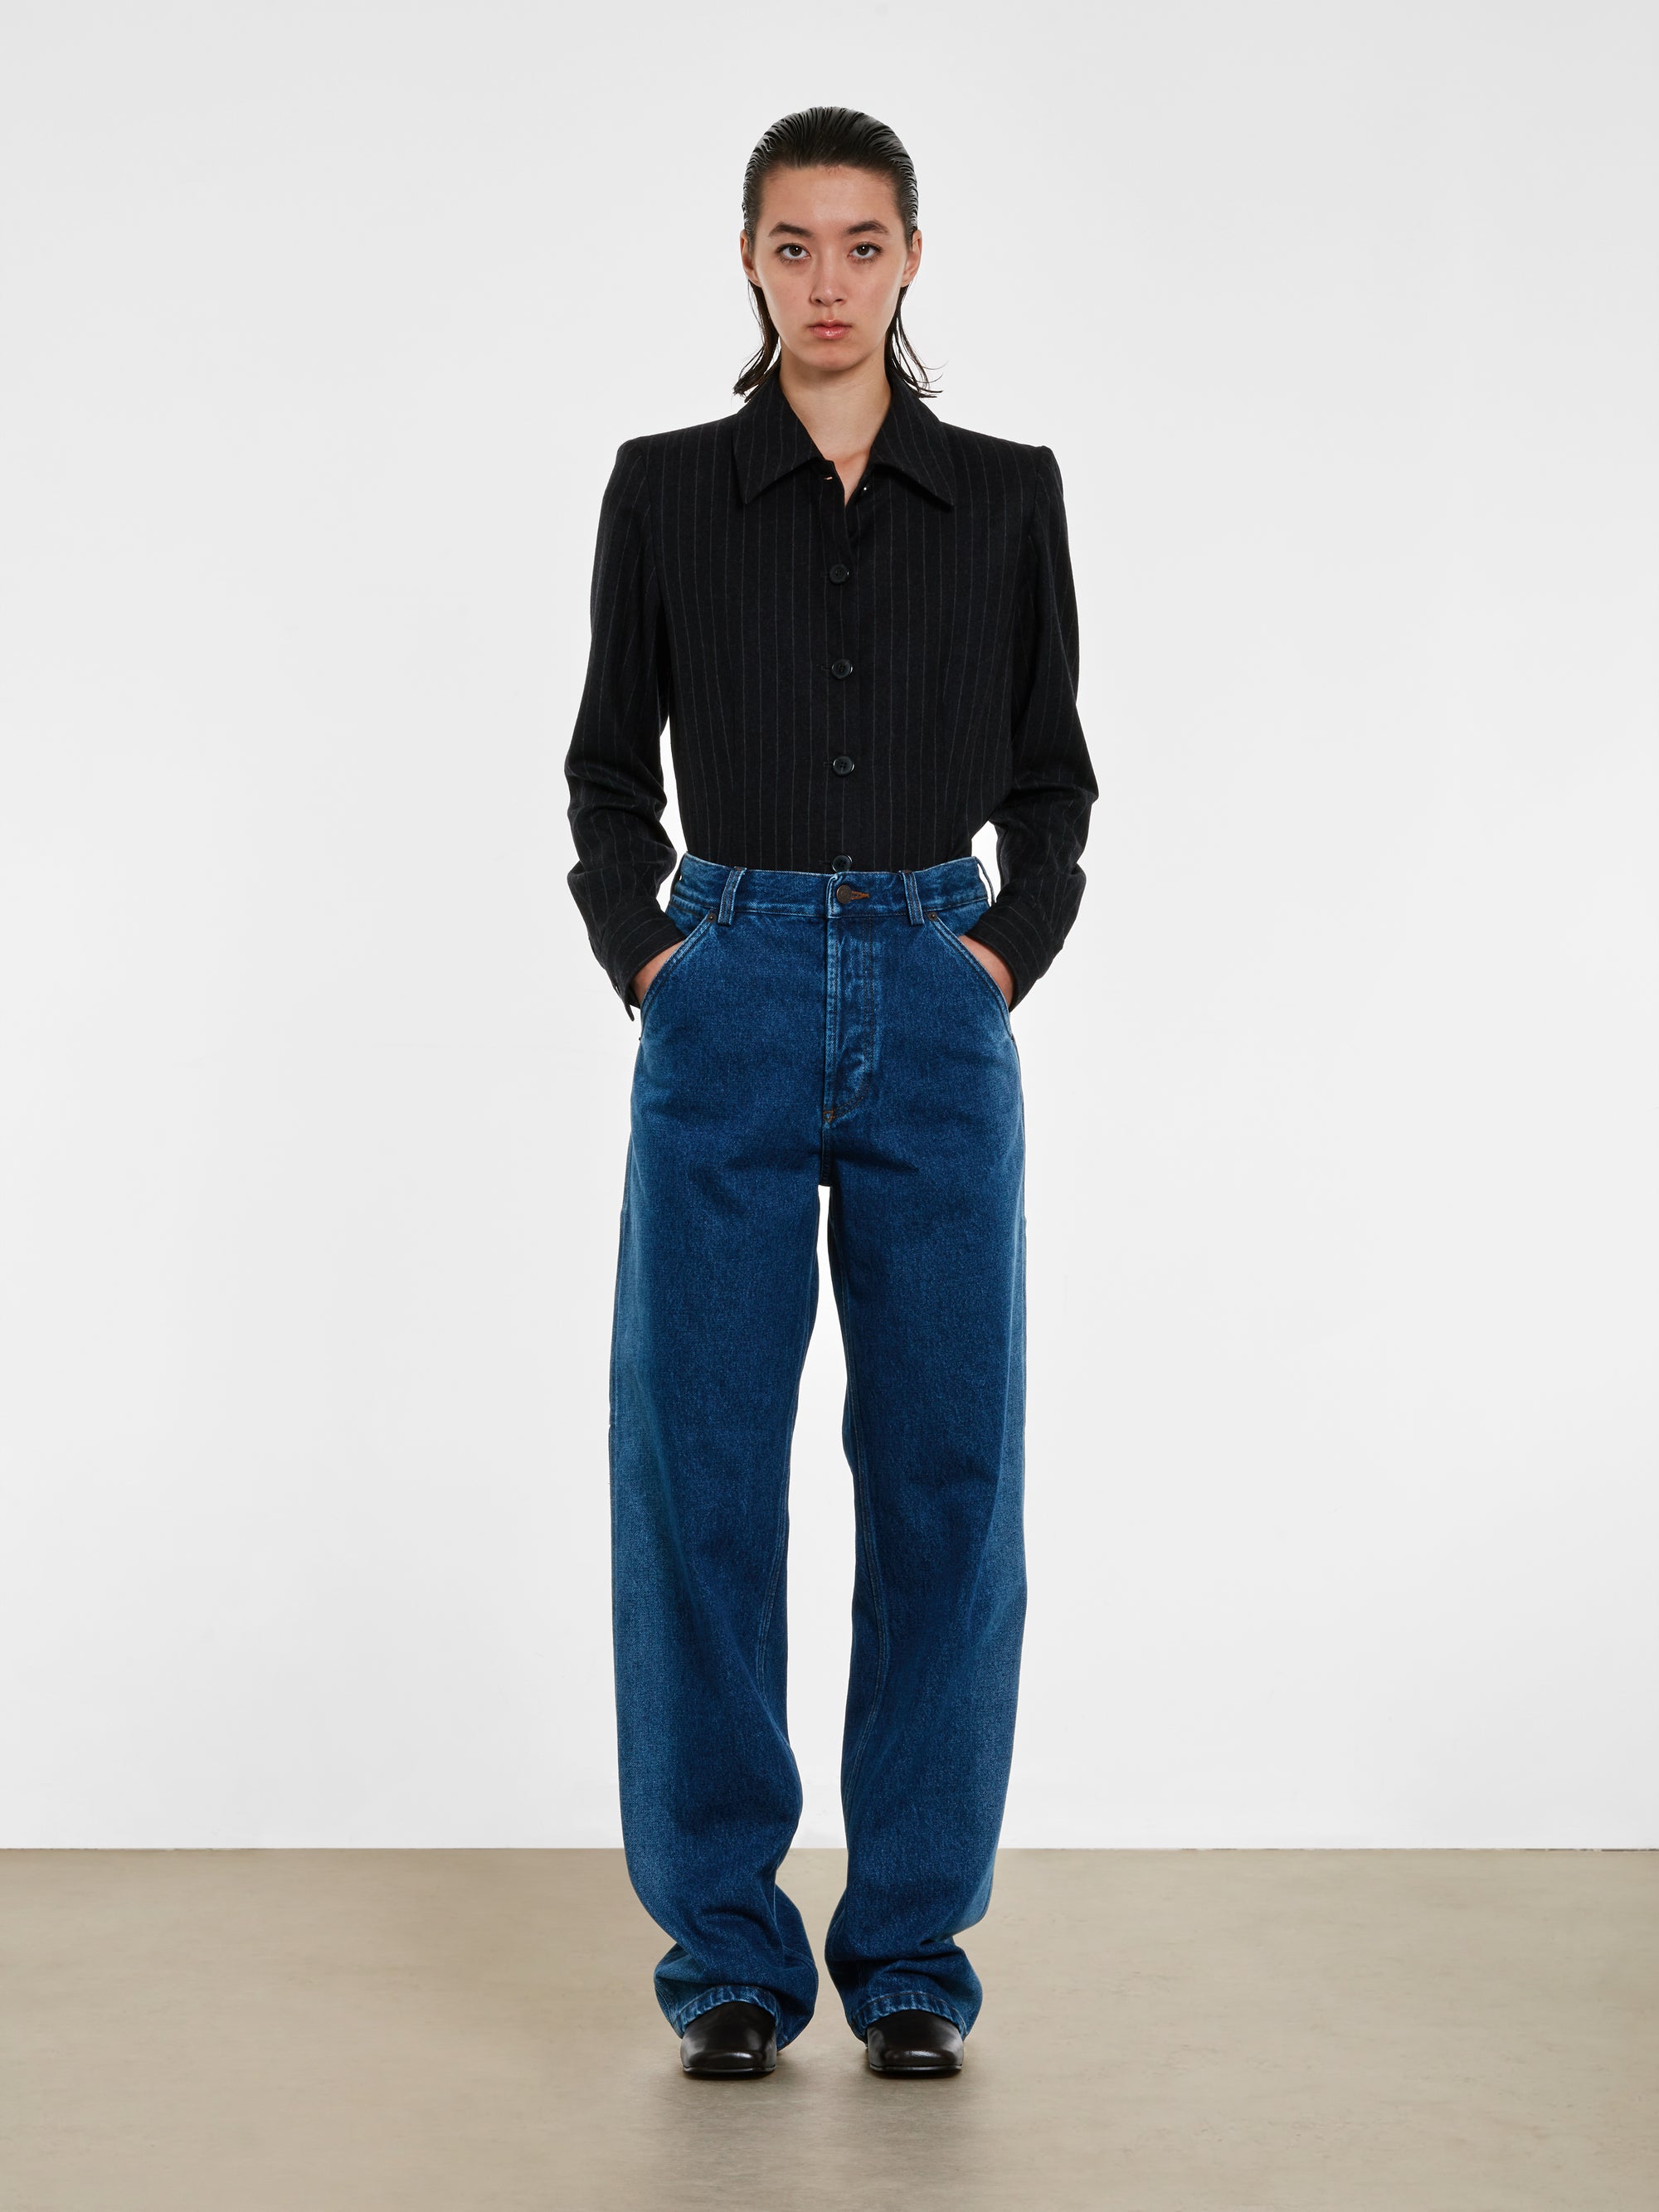 Dries Van Noten - Women’s Indigo Faded Jeans - (Indigo) view 5